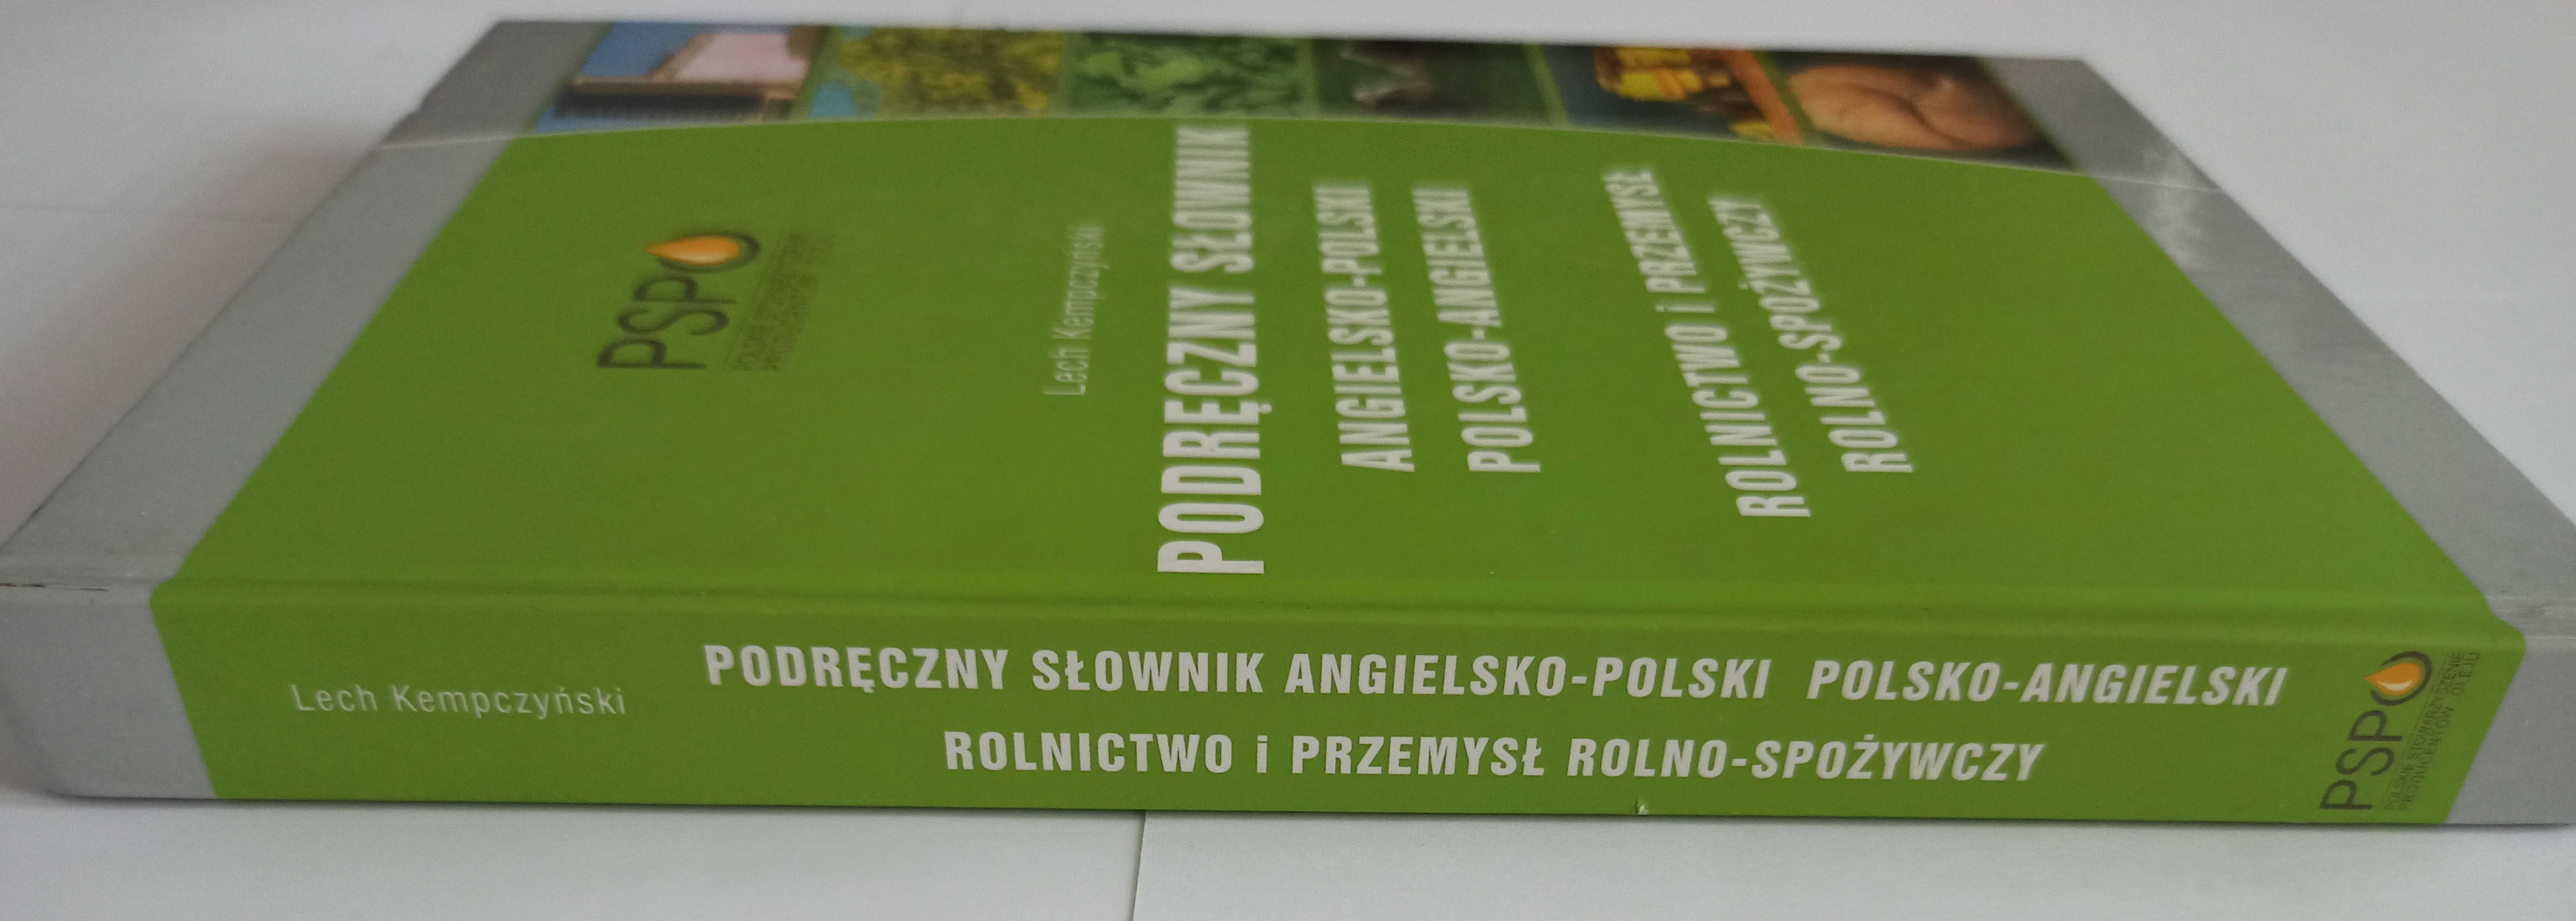 Słownik polsko-angielski ANG-PL Rolnictwo i przemysł rolno-spożywczy